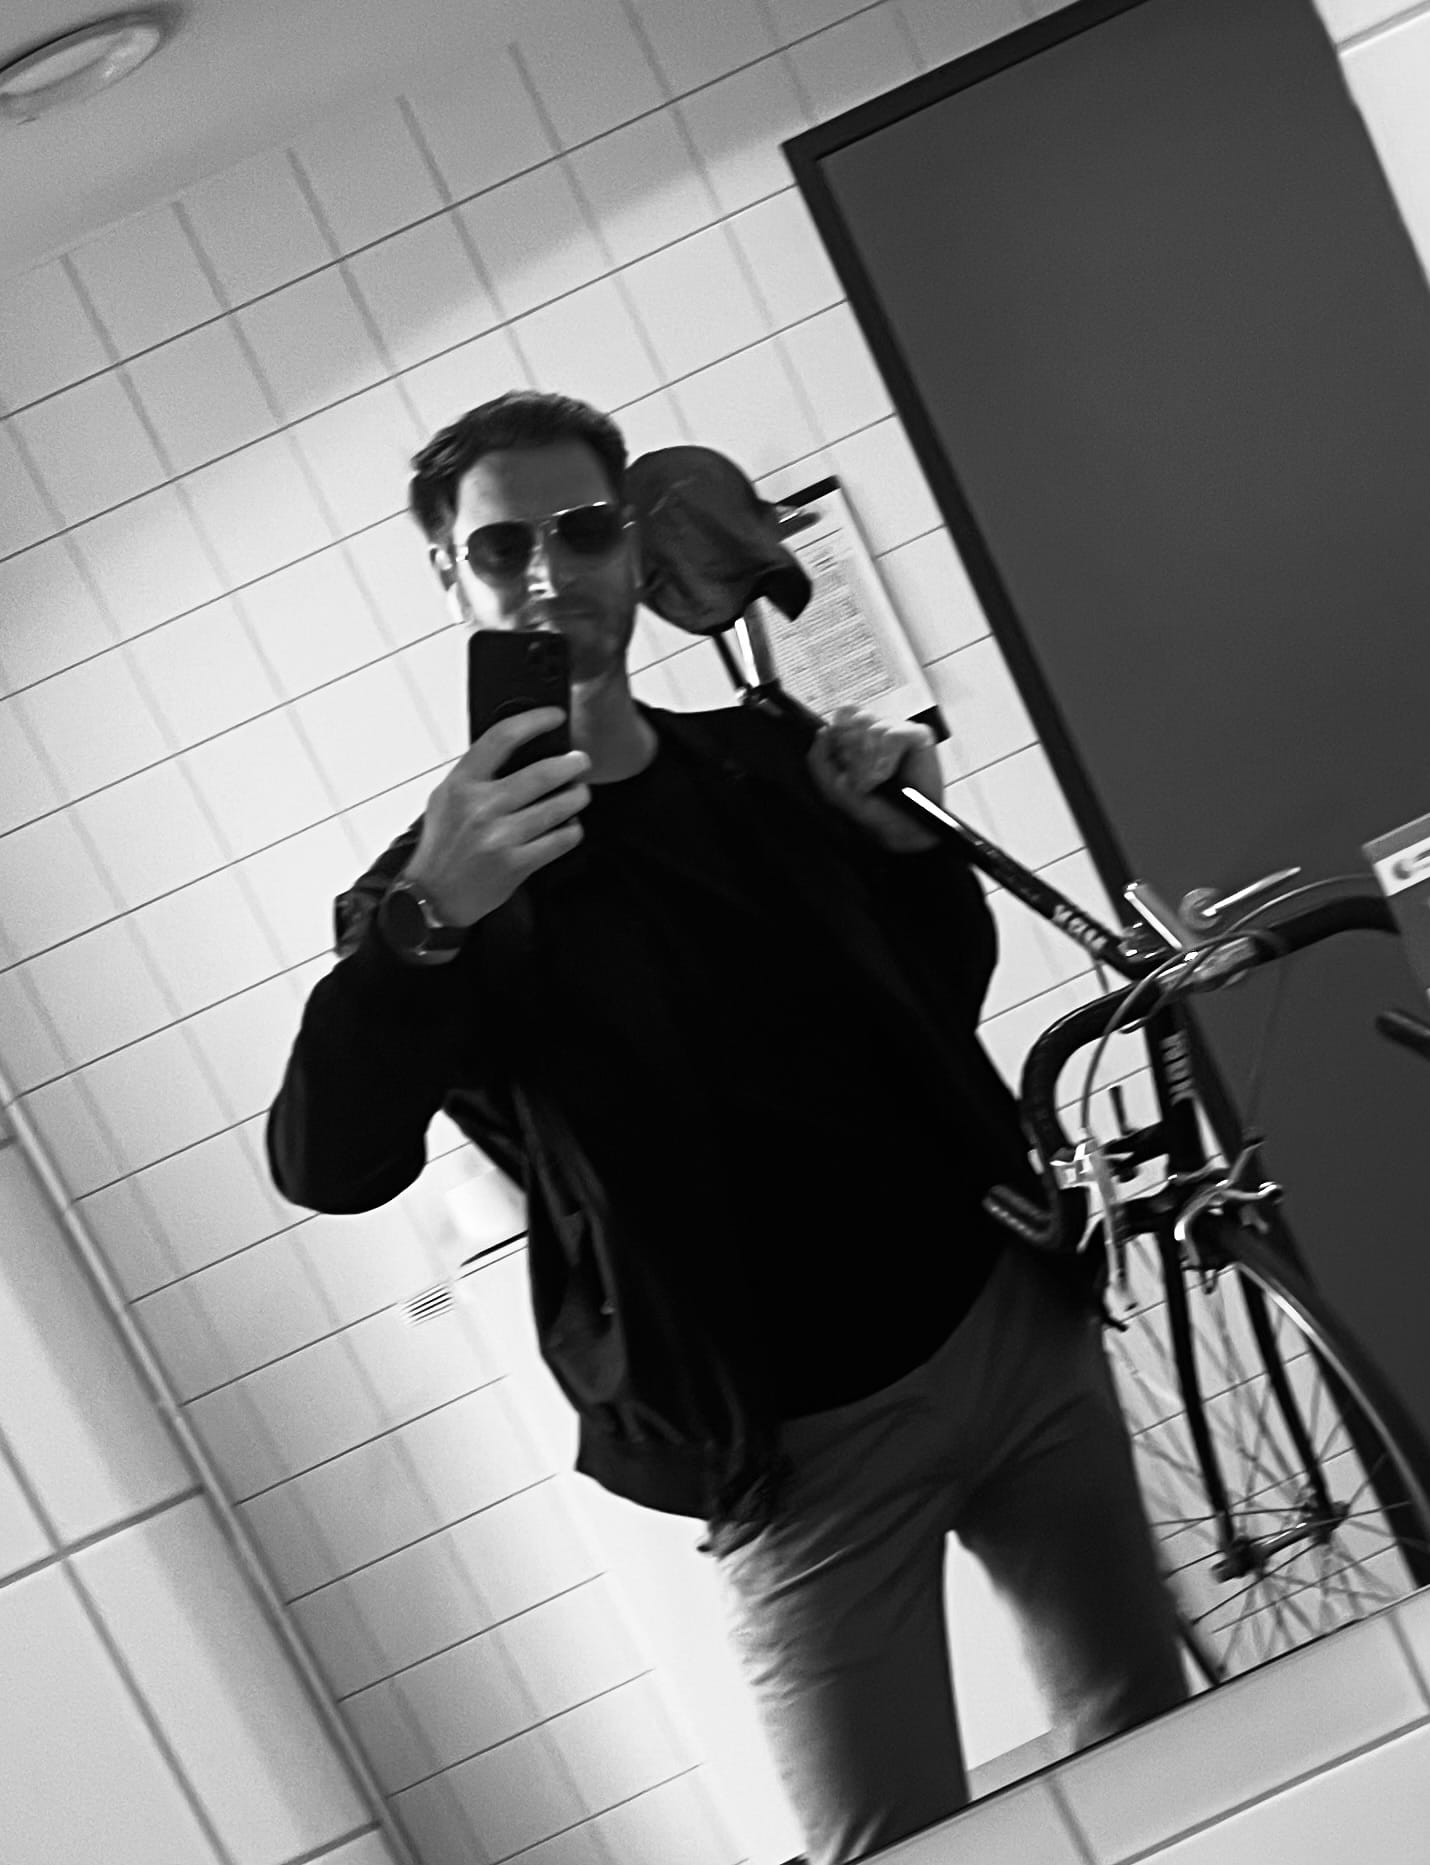 Der User und das Selfie. Das Bild ist schwarz-weiß. Er trägt ein Fahrrad und eine Sonnenbrille